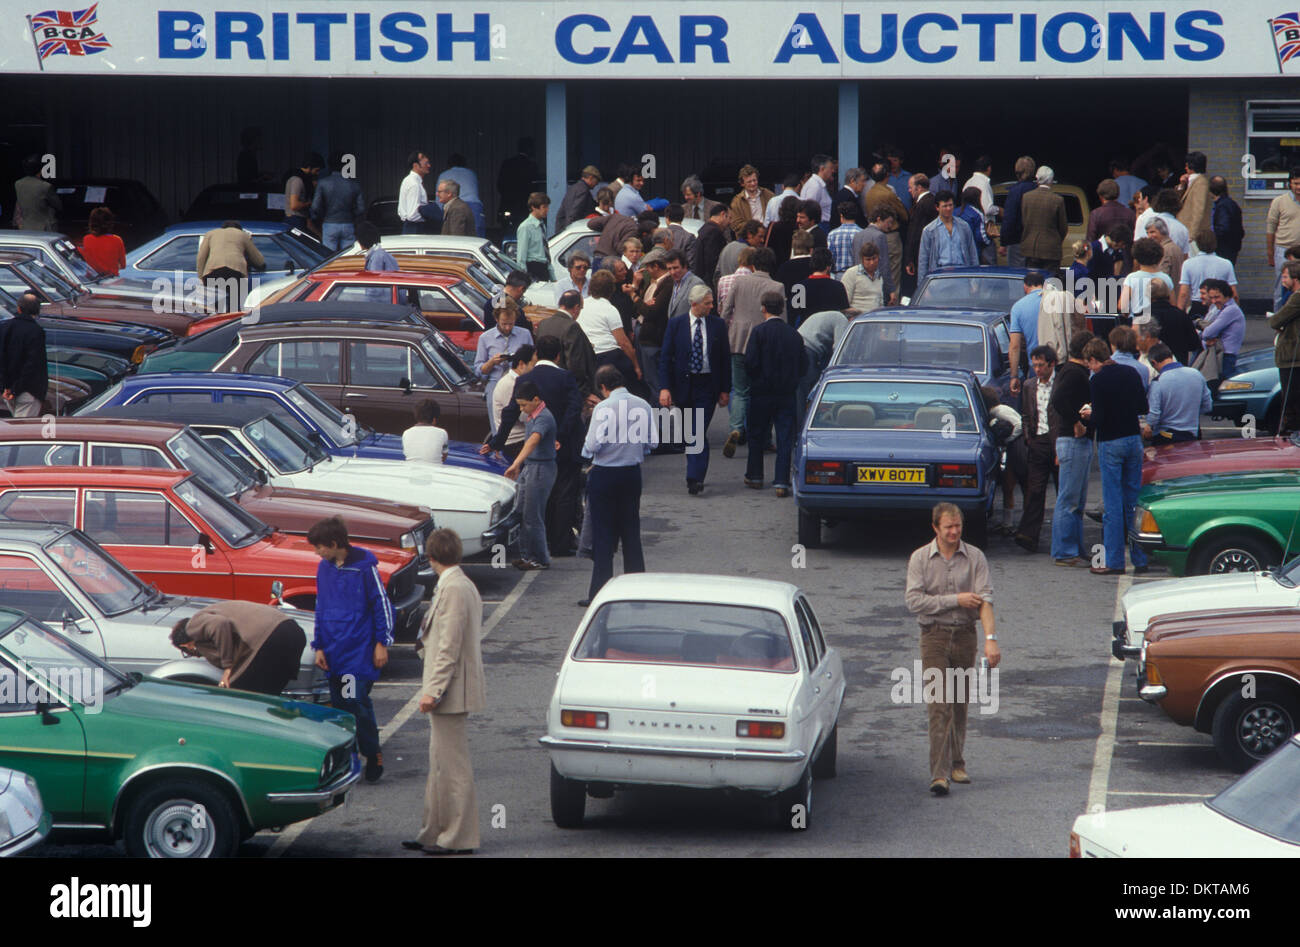 British car Auctions personnes inspectant les voitures sur le point d'être mises aux enchères. Wandsworth Bridge Road, Fulham, Londres, Angleterre. ANNÉES 1981 1980 ROYAUME-UNI HOMER SYKES Banque D'Images